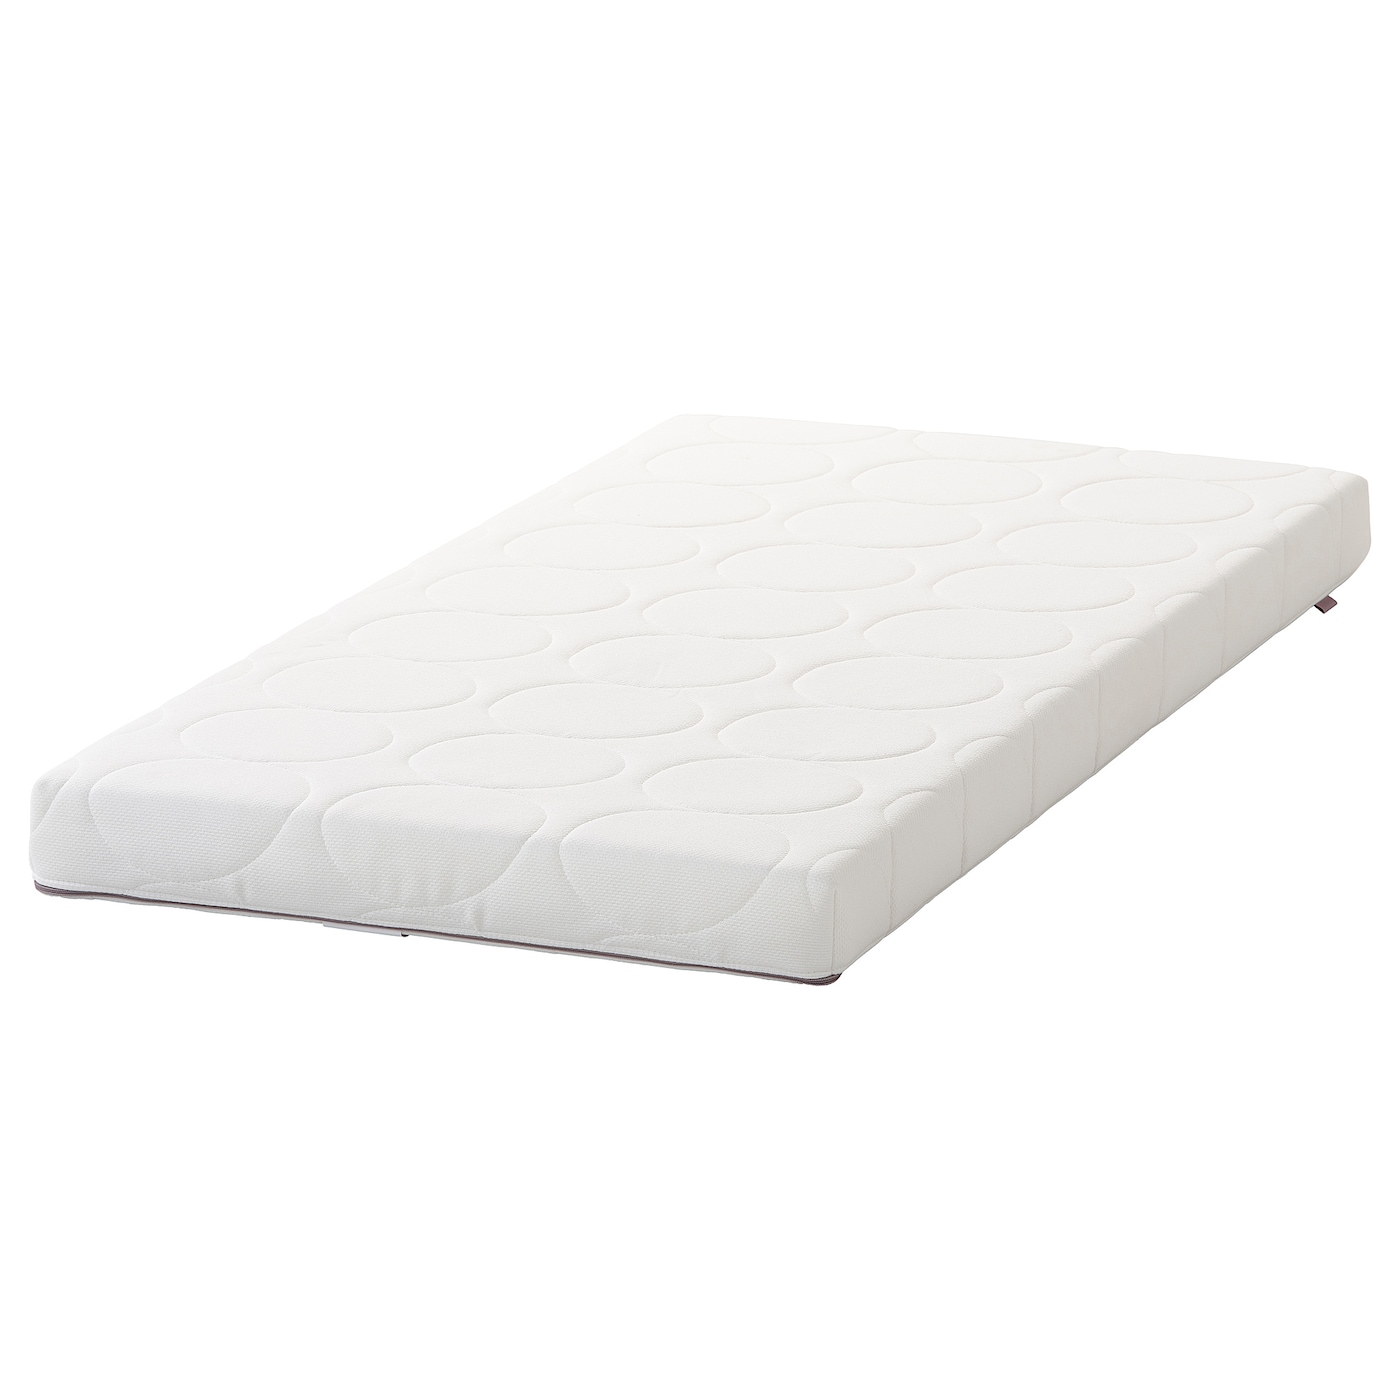 Матрас для детской кроватки - SKÖNAST IKEA/ СКОНАСТ ИКЕА, 60х120 см, белый